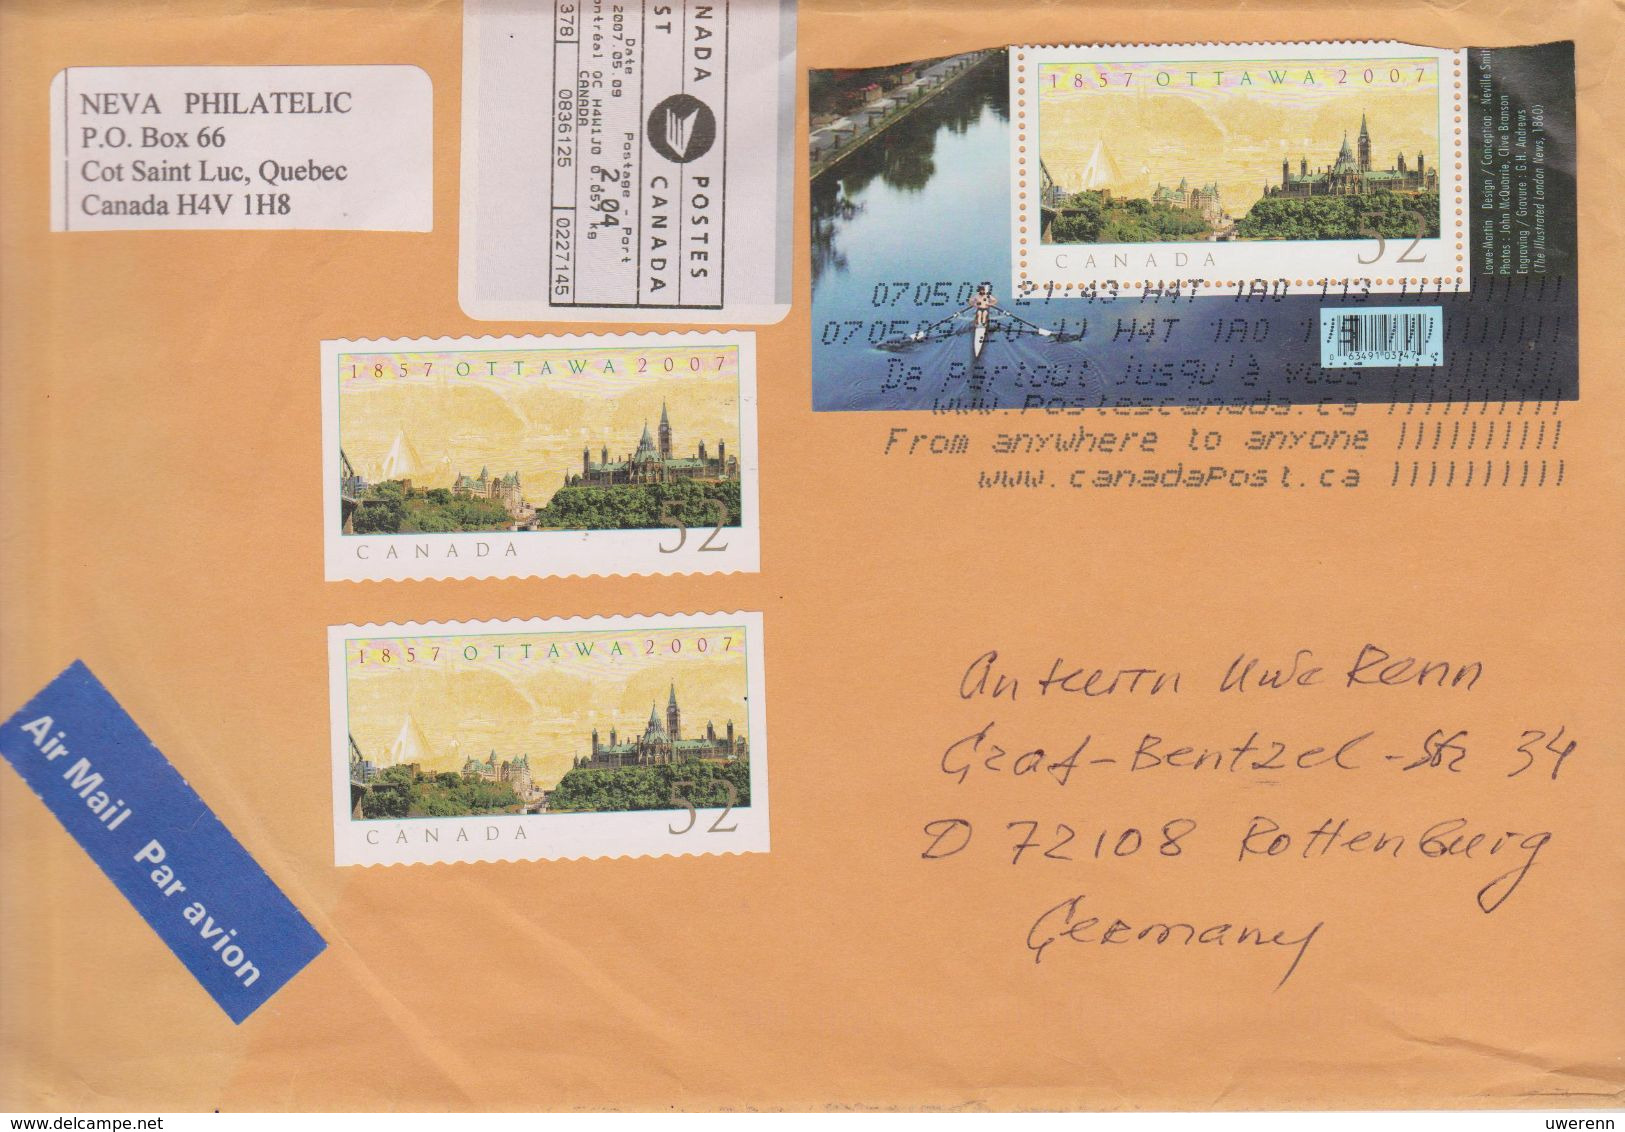 Kanada 2009. Brief Aus Cote-Saint-Luc, Quebec Nach Deutschland, Stempel Posteigenwerbung "From Anywhere ..." - Histoire Postale